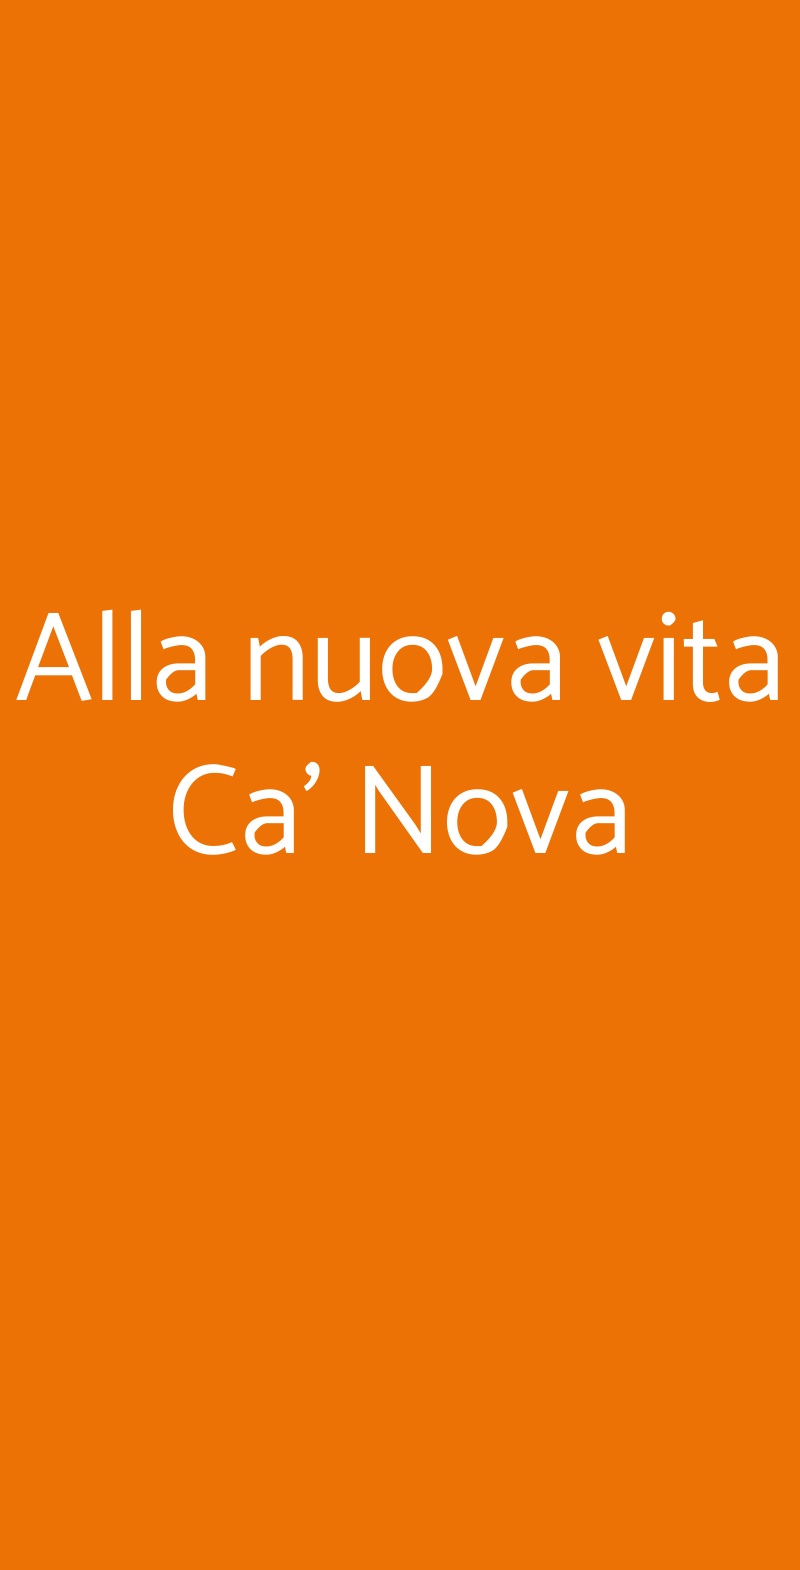 Alla nuova vita Ca’ Nova Castel D'aiano menù 1 pagina